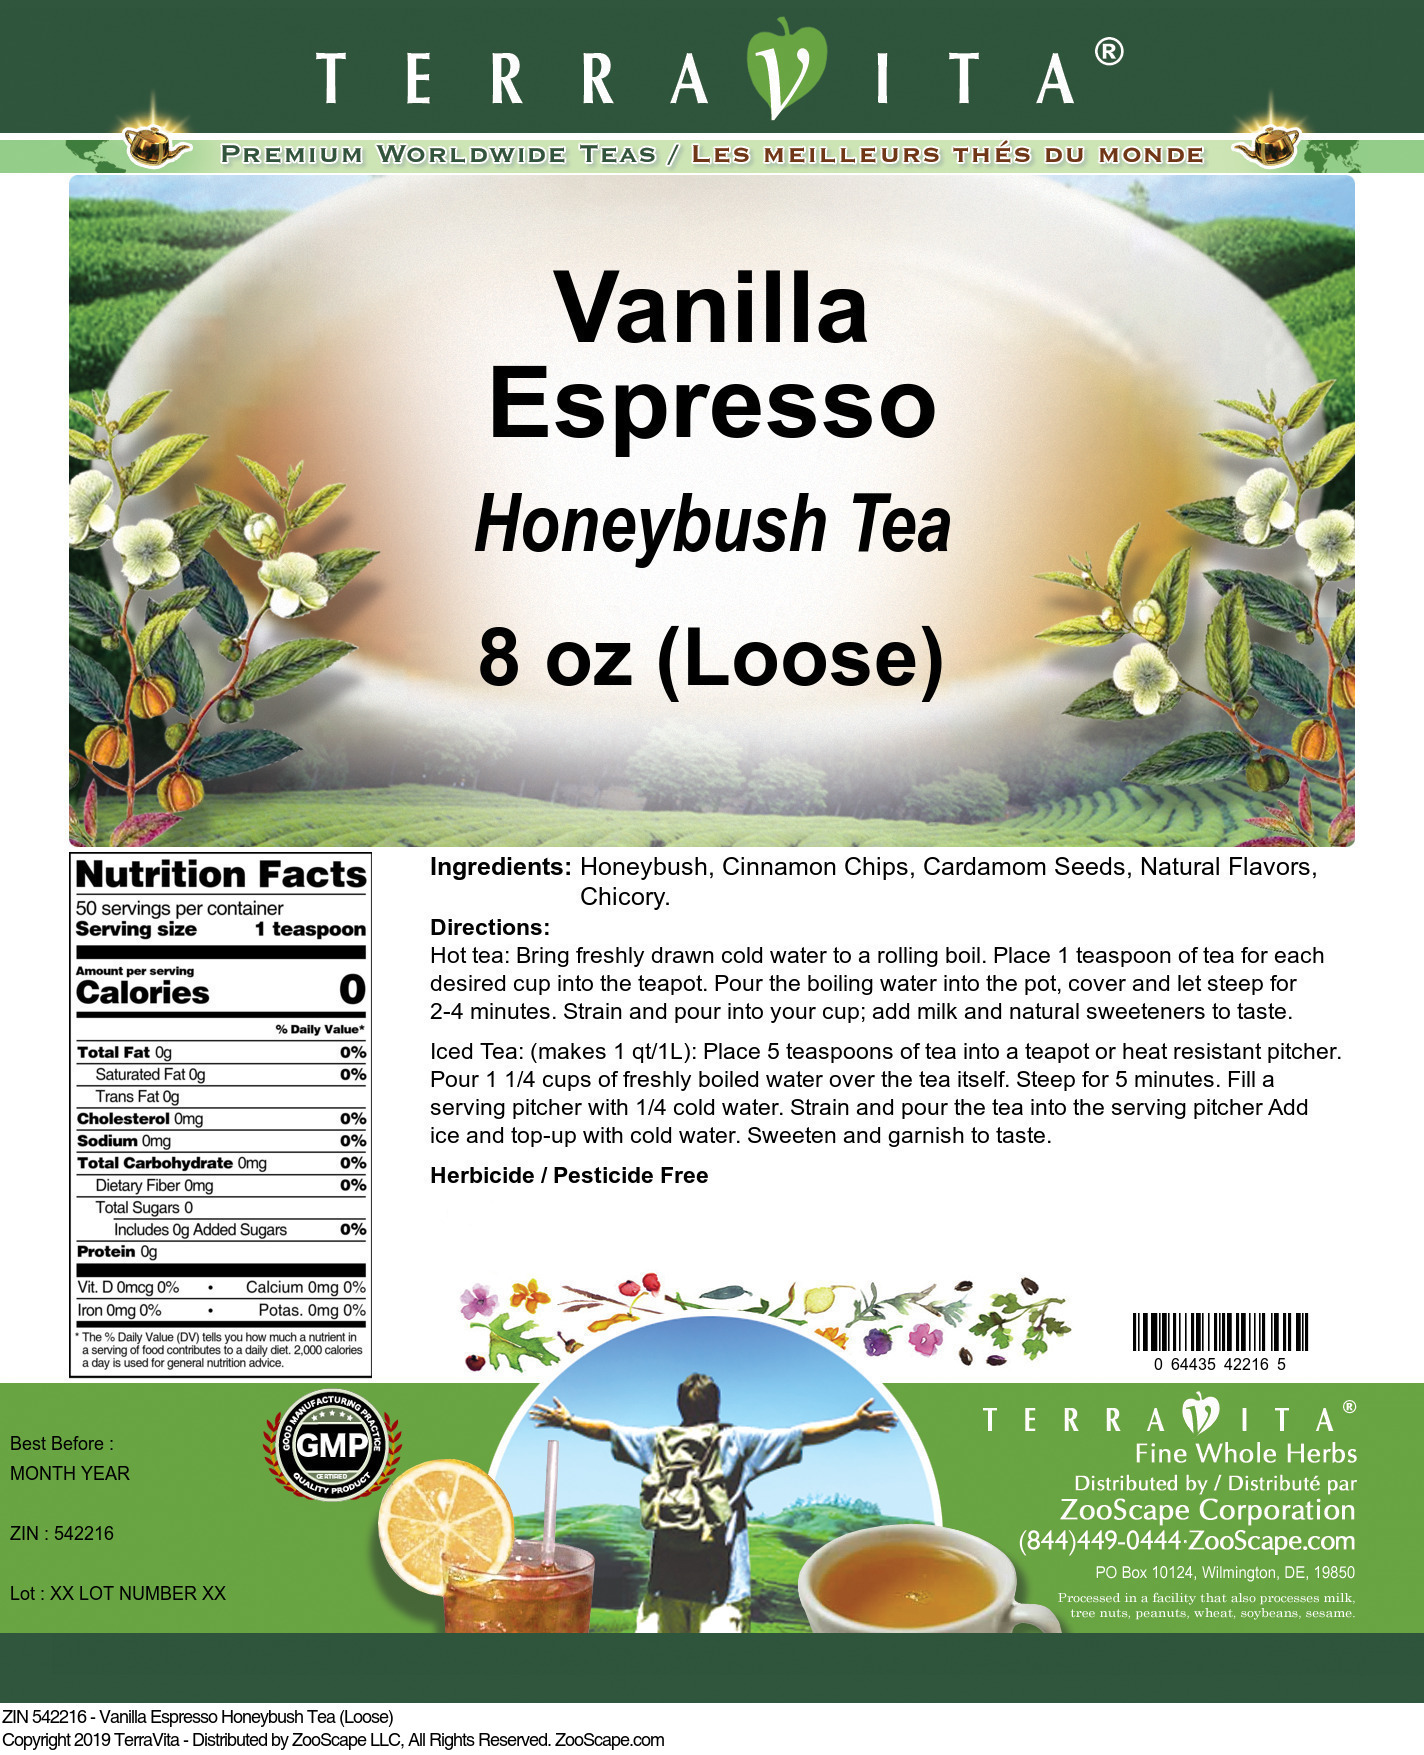 Vanilla Espresso Honeybush Tea (Loose) - Label